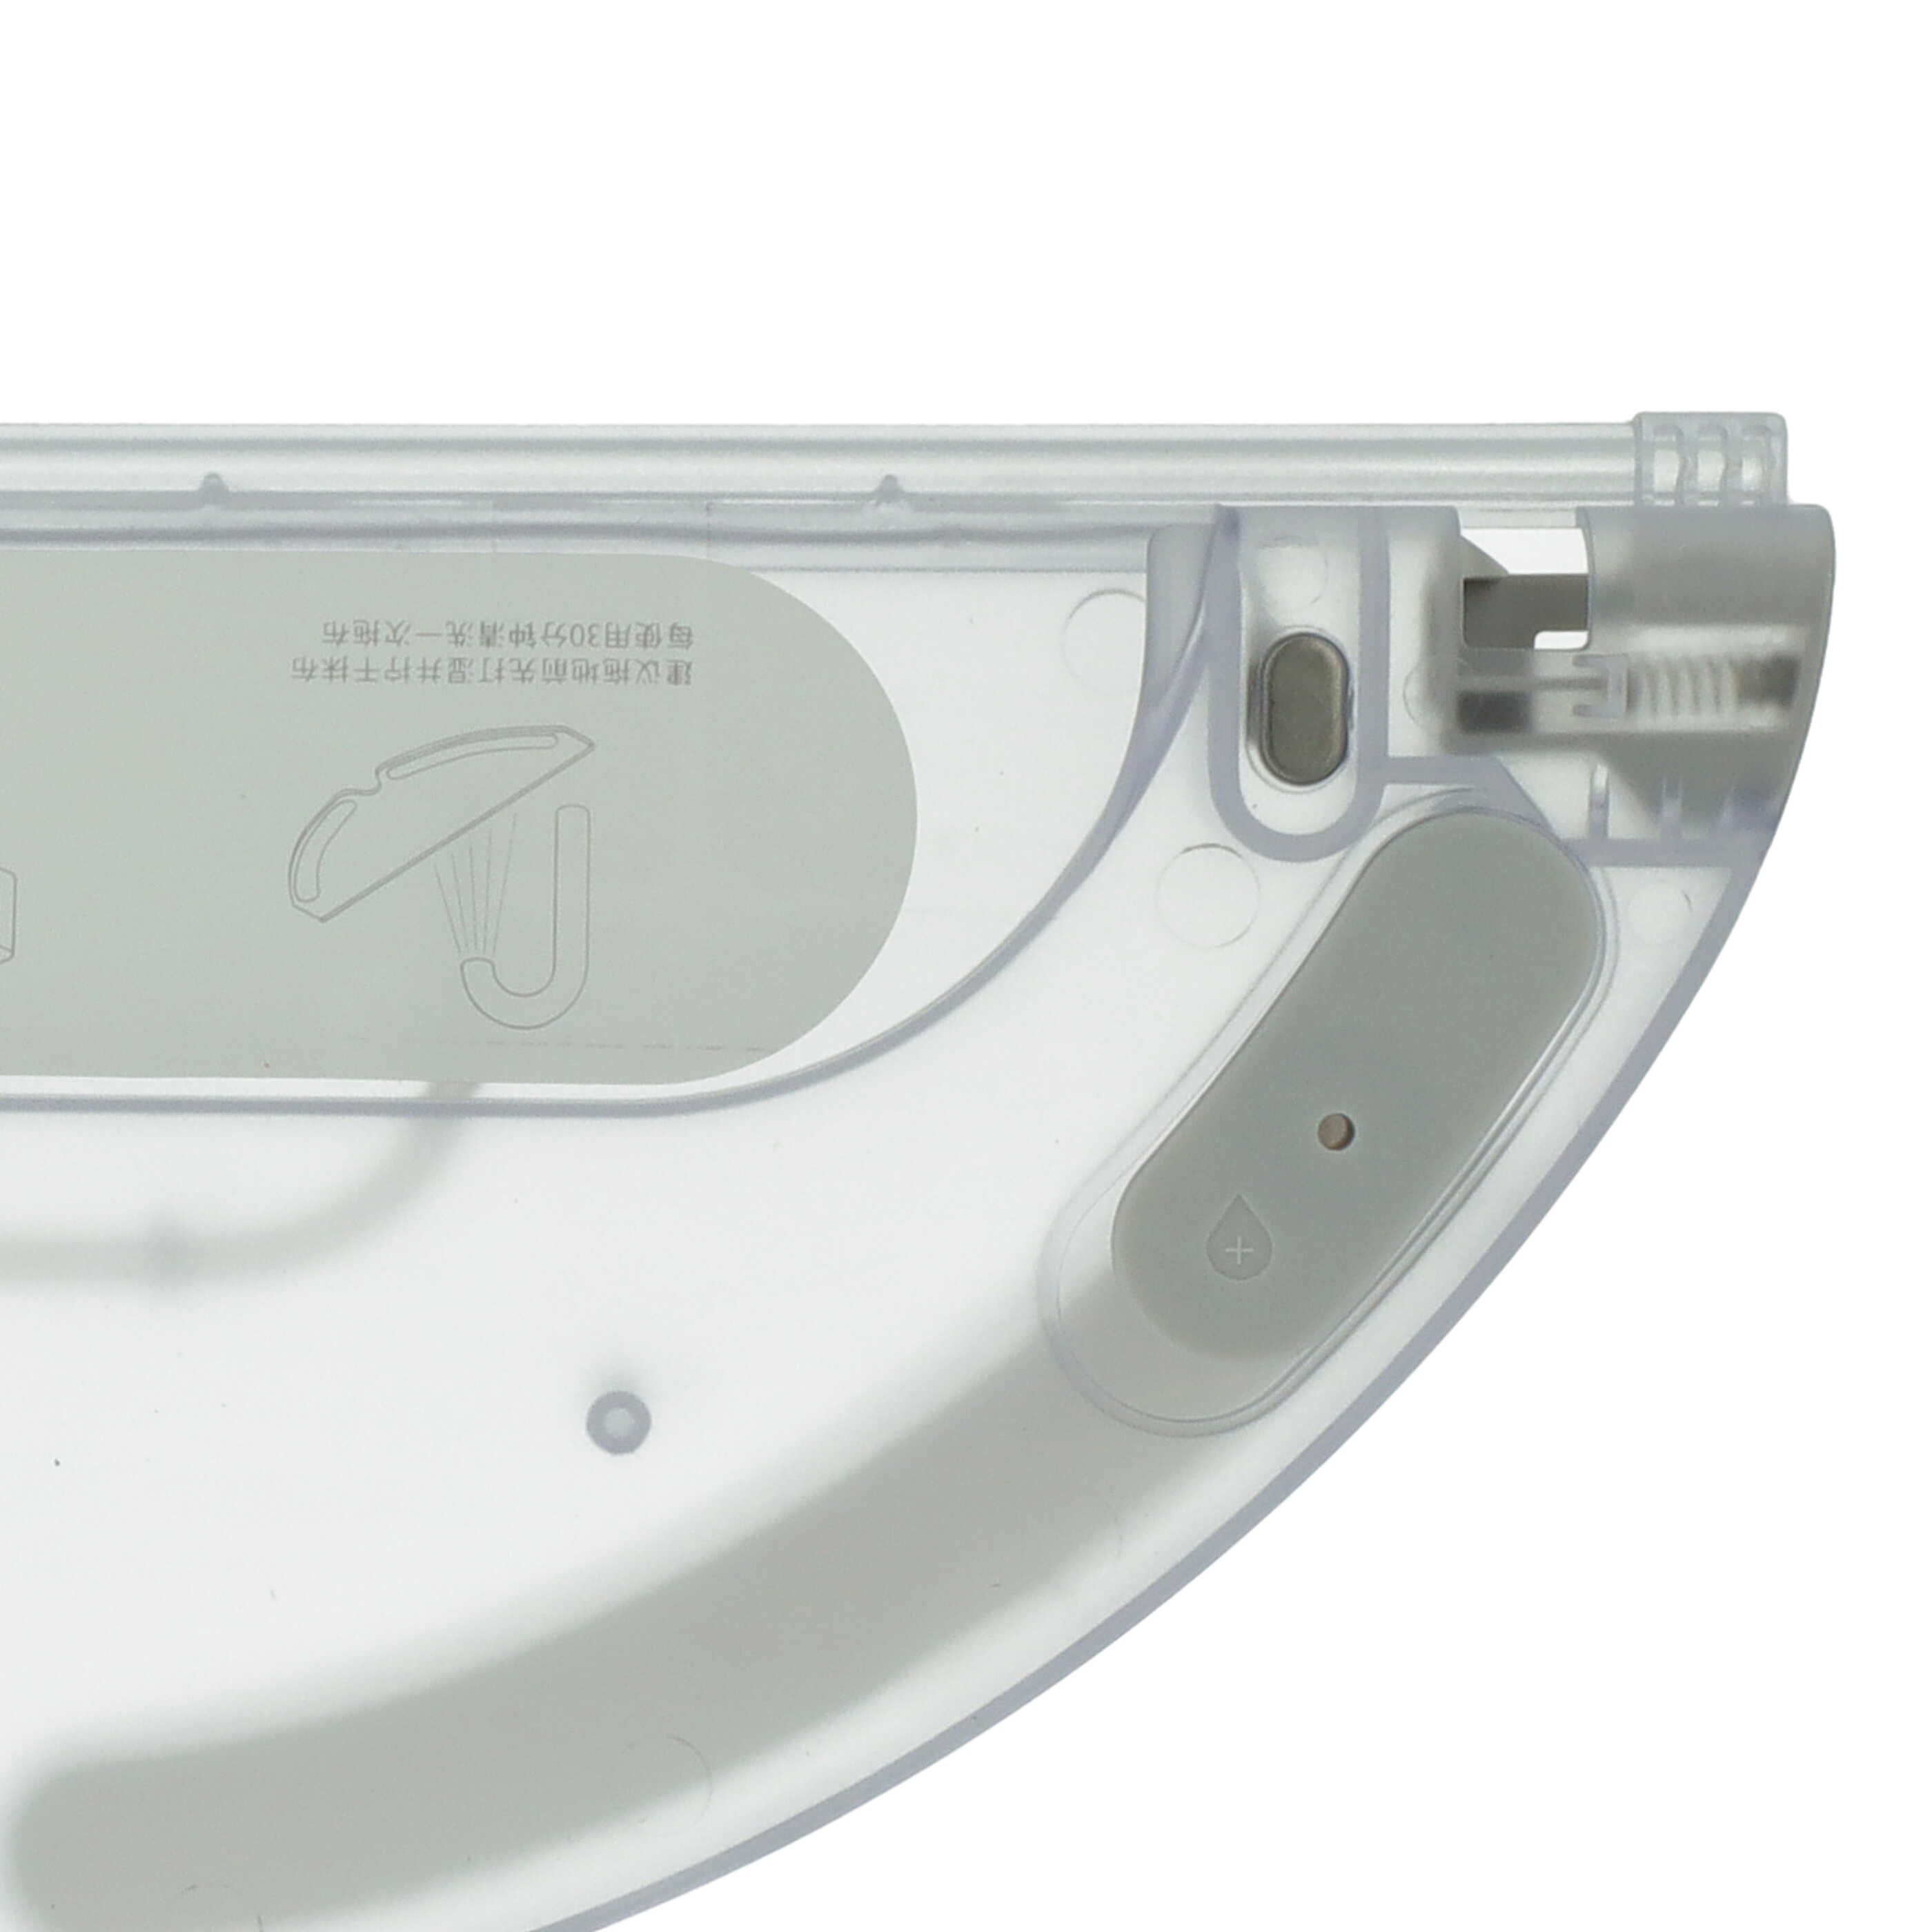 Support pour lingette pour robot aspirateur Xiaomi Mijia 1C - 32,5 x 13,4 x 1,6 cm, 190 g